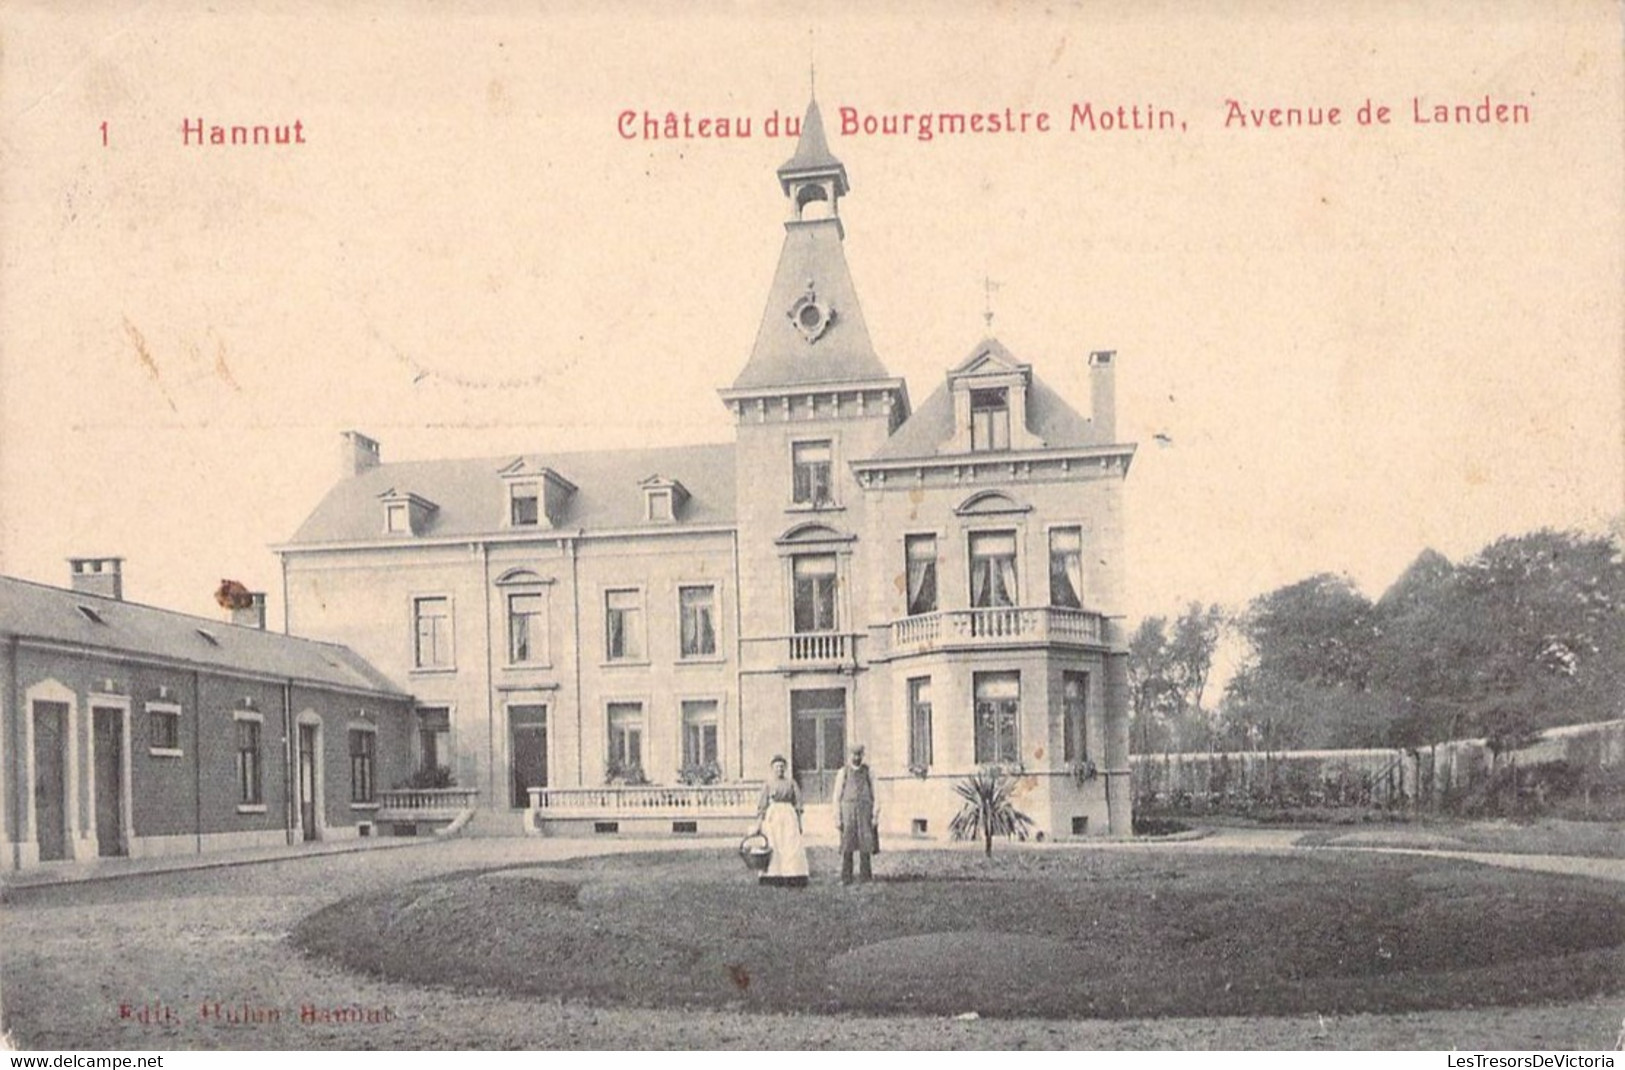 Belgique - Hannut - Château Du Bourgmestre Mottin - Avenue De Landen - Edit. Rubin - Animé - Carte Postale Ancienne - Hannuit